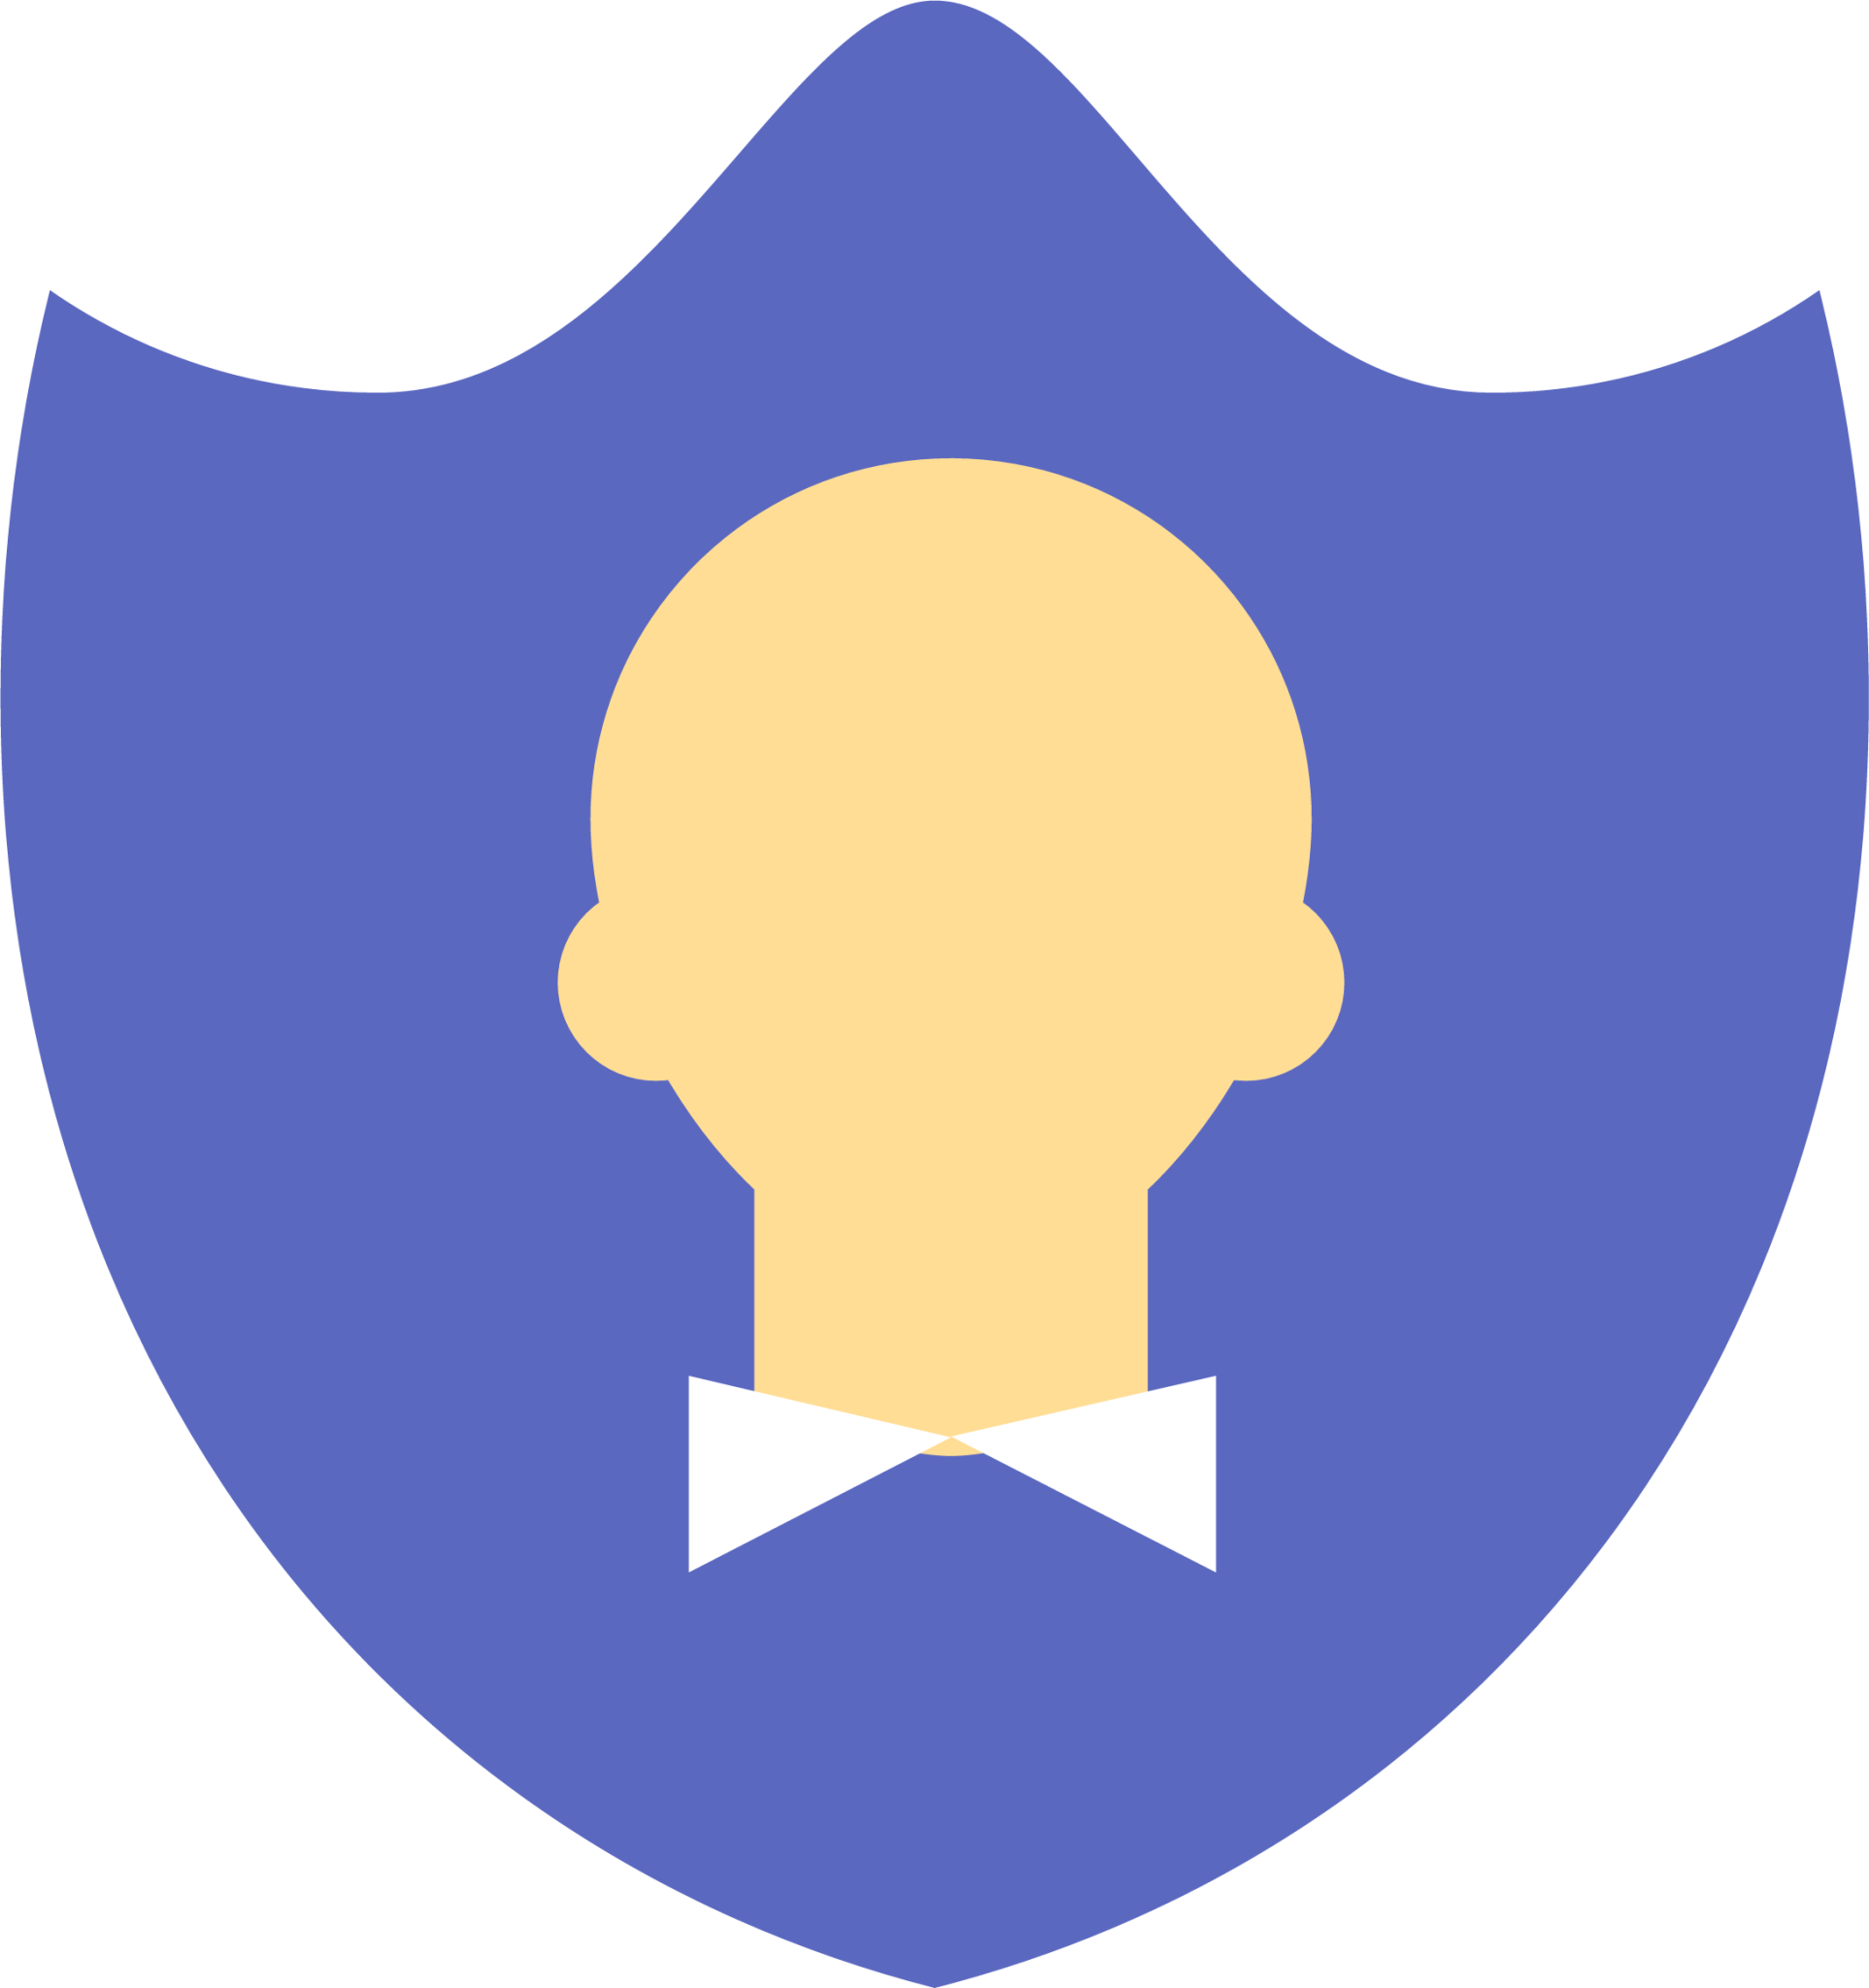 account shield icon